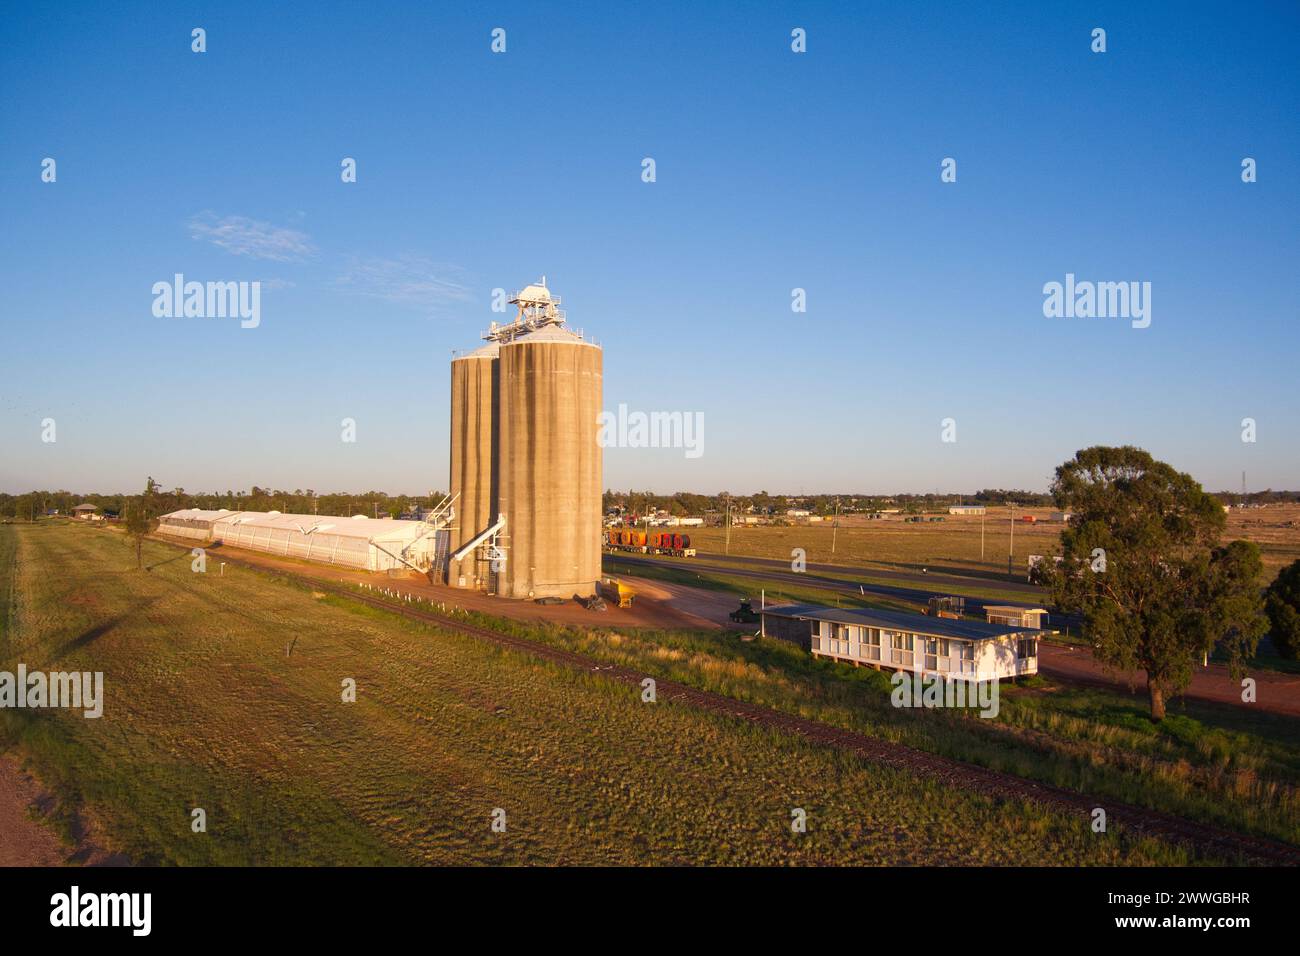 Aerea del Gran Corp Depot a Wallumbilla, una città rurale e località nella regione di Maranoa, Queensland, Australia Foto Stock